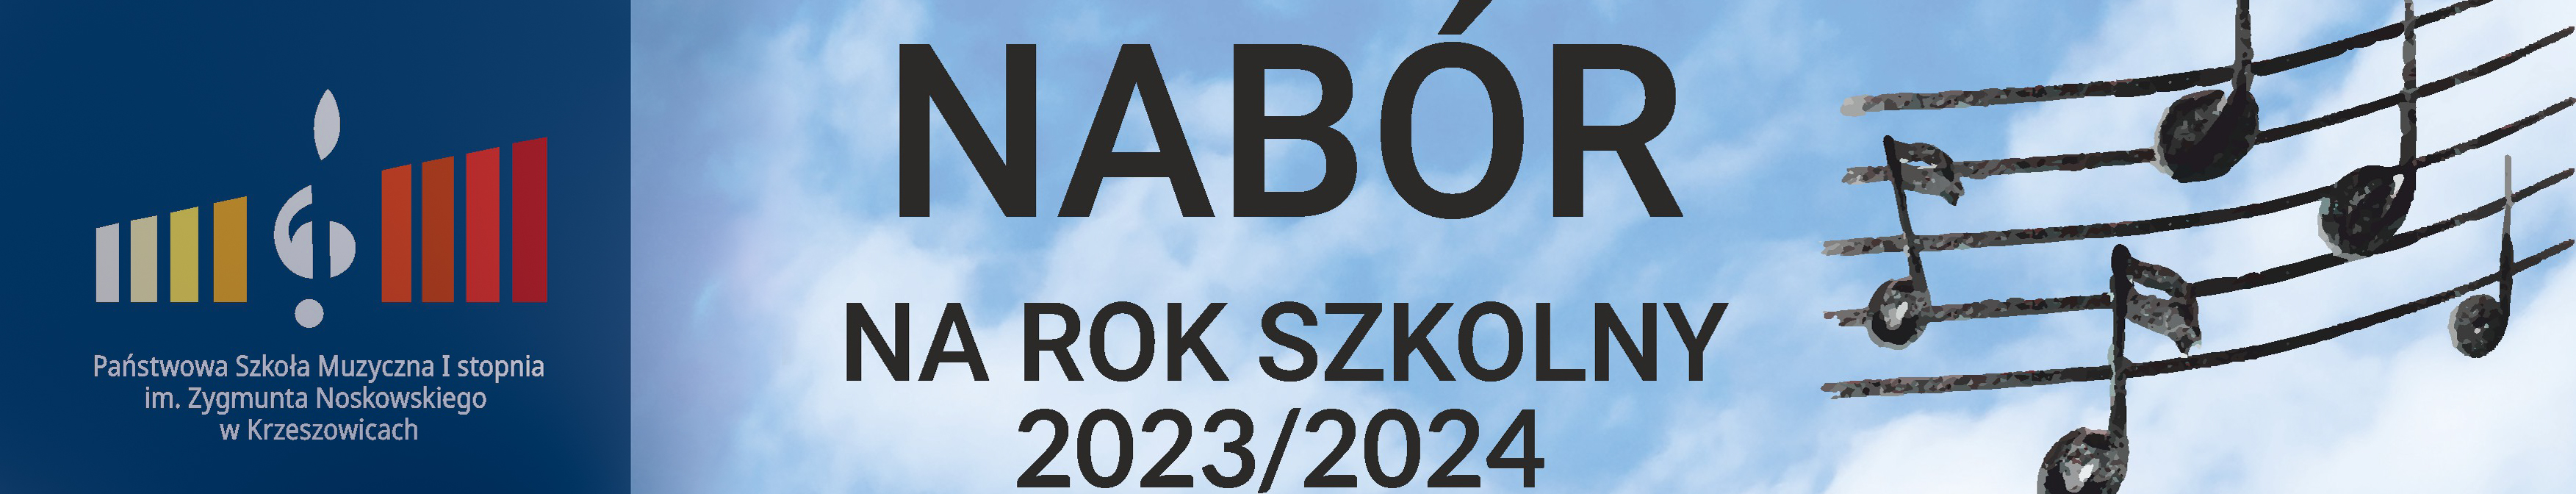 baner po lewej logo szkoły a w prawo napis Nabór na rok szkolny 2023/2024 i po prawej rysunek nut na pięciolinii